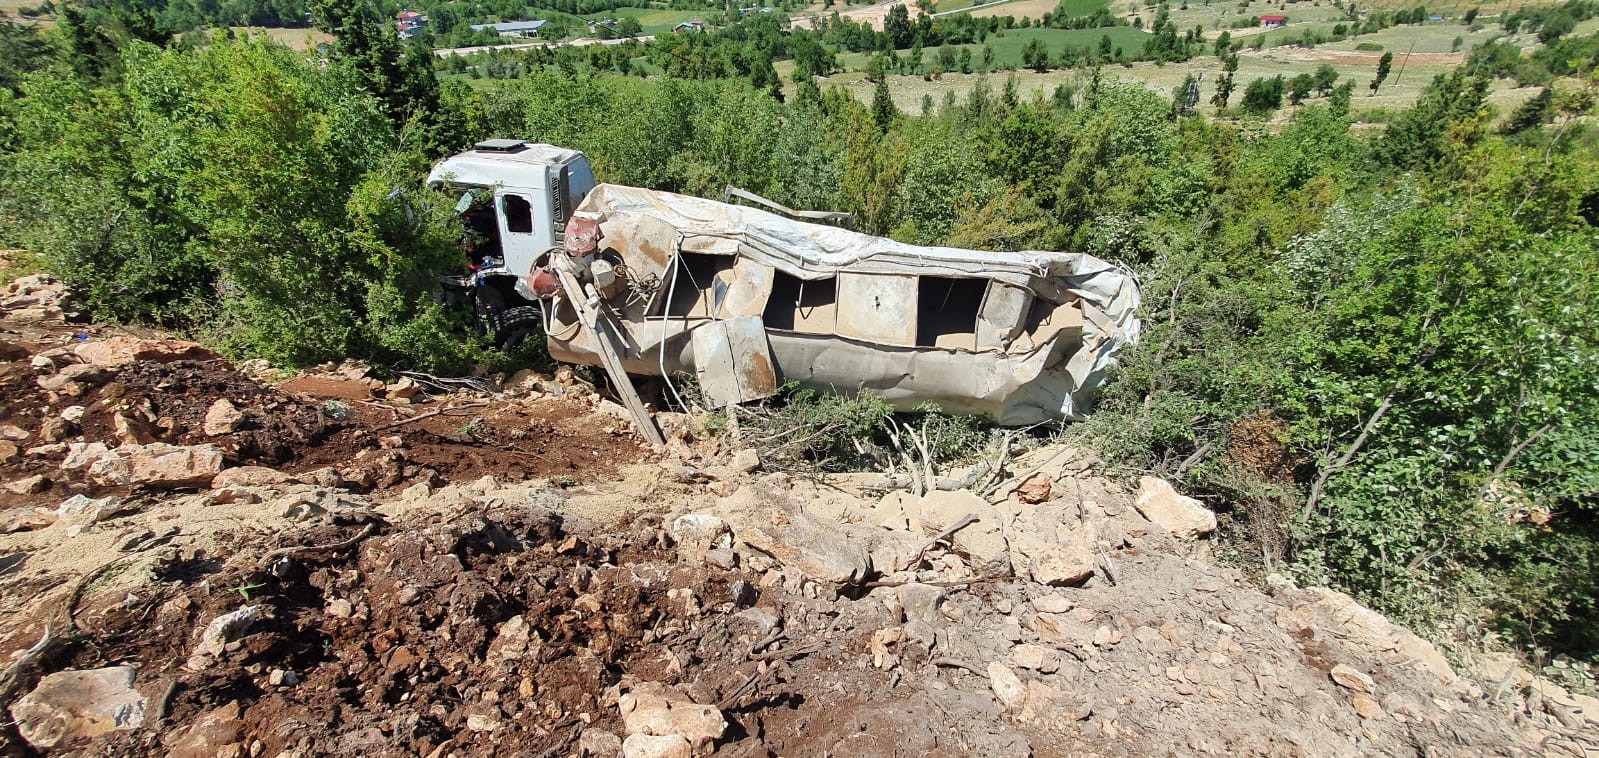 Mersin’de trafik kazası: 1 ölü